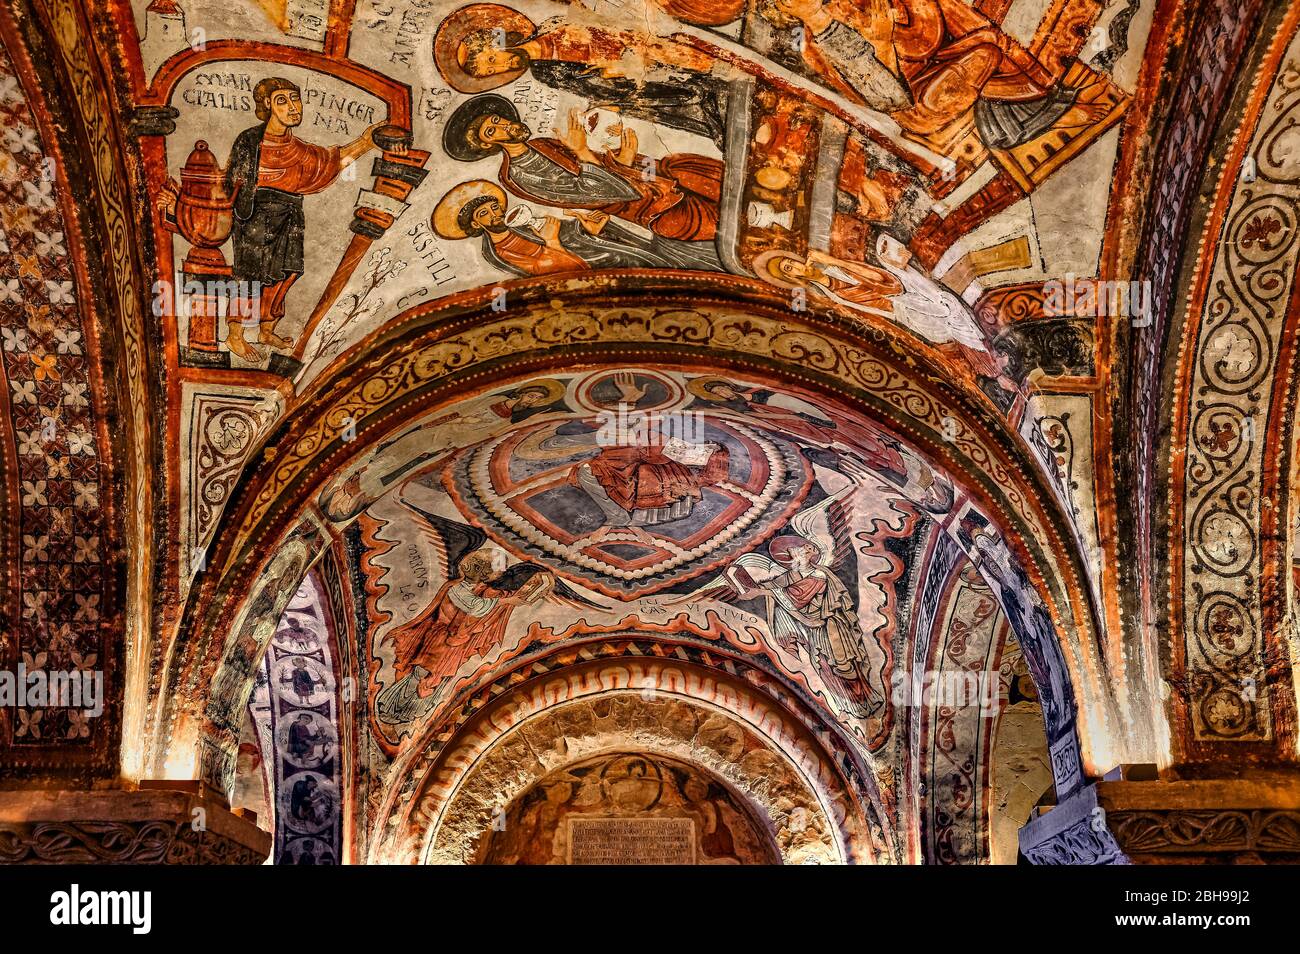 El Panteón de los Reyes de León, en la Basílica de San Isidoro, es el lugar donde la mayoría de los reyes del Reino de León fueron enterrados durante la Edad Media, Foto de stock